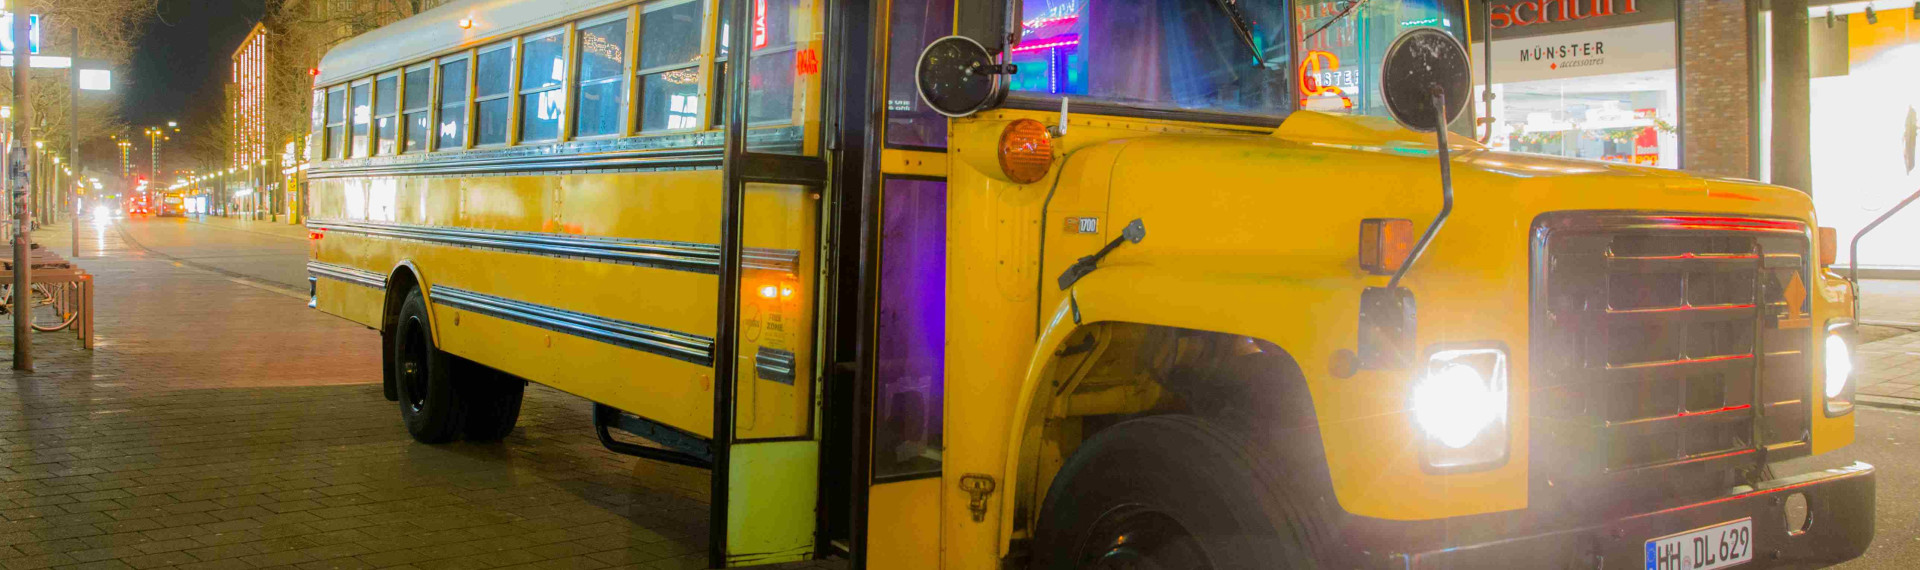 Party på amerikansk skolebus - Fyr den af, som du drømte om i skolen